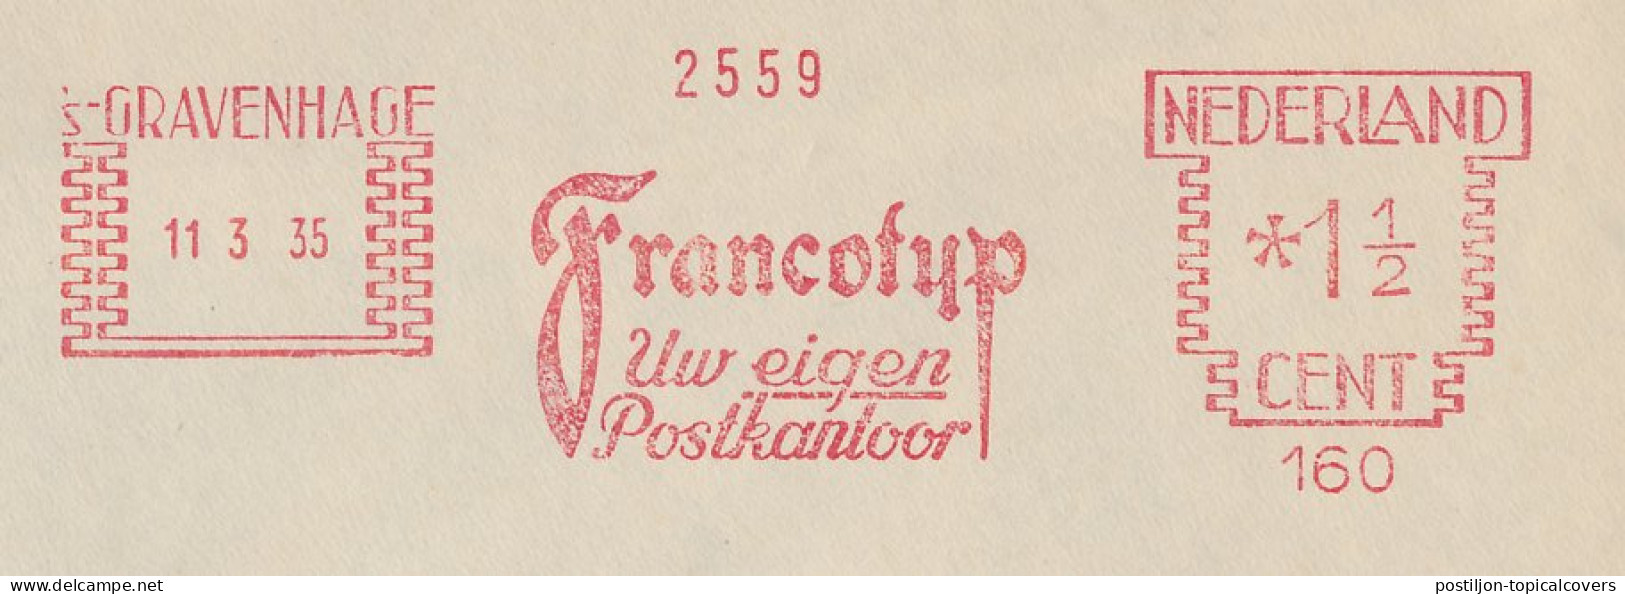 Meter Cover Netherlands 1935 Francotyp - The Hague - Vignette [ATM]